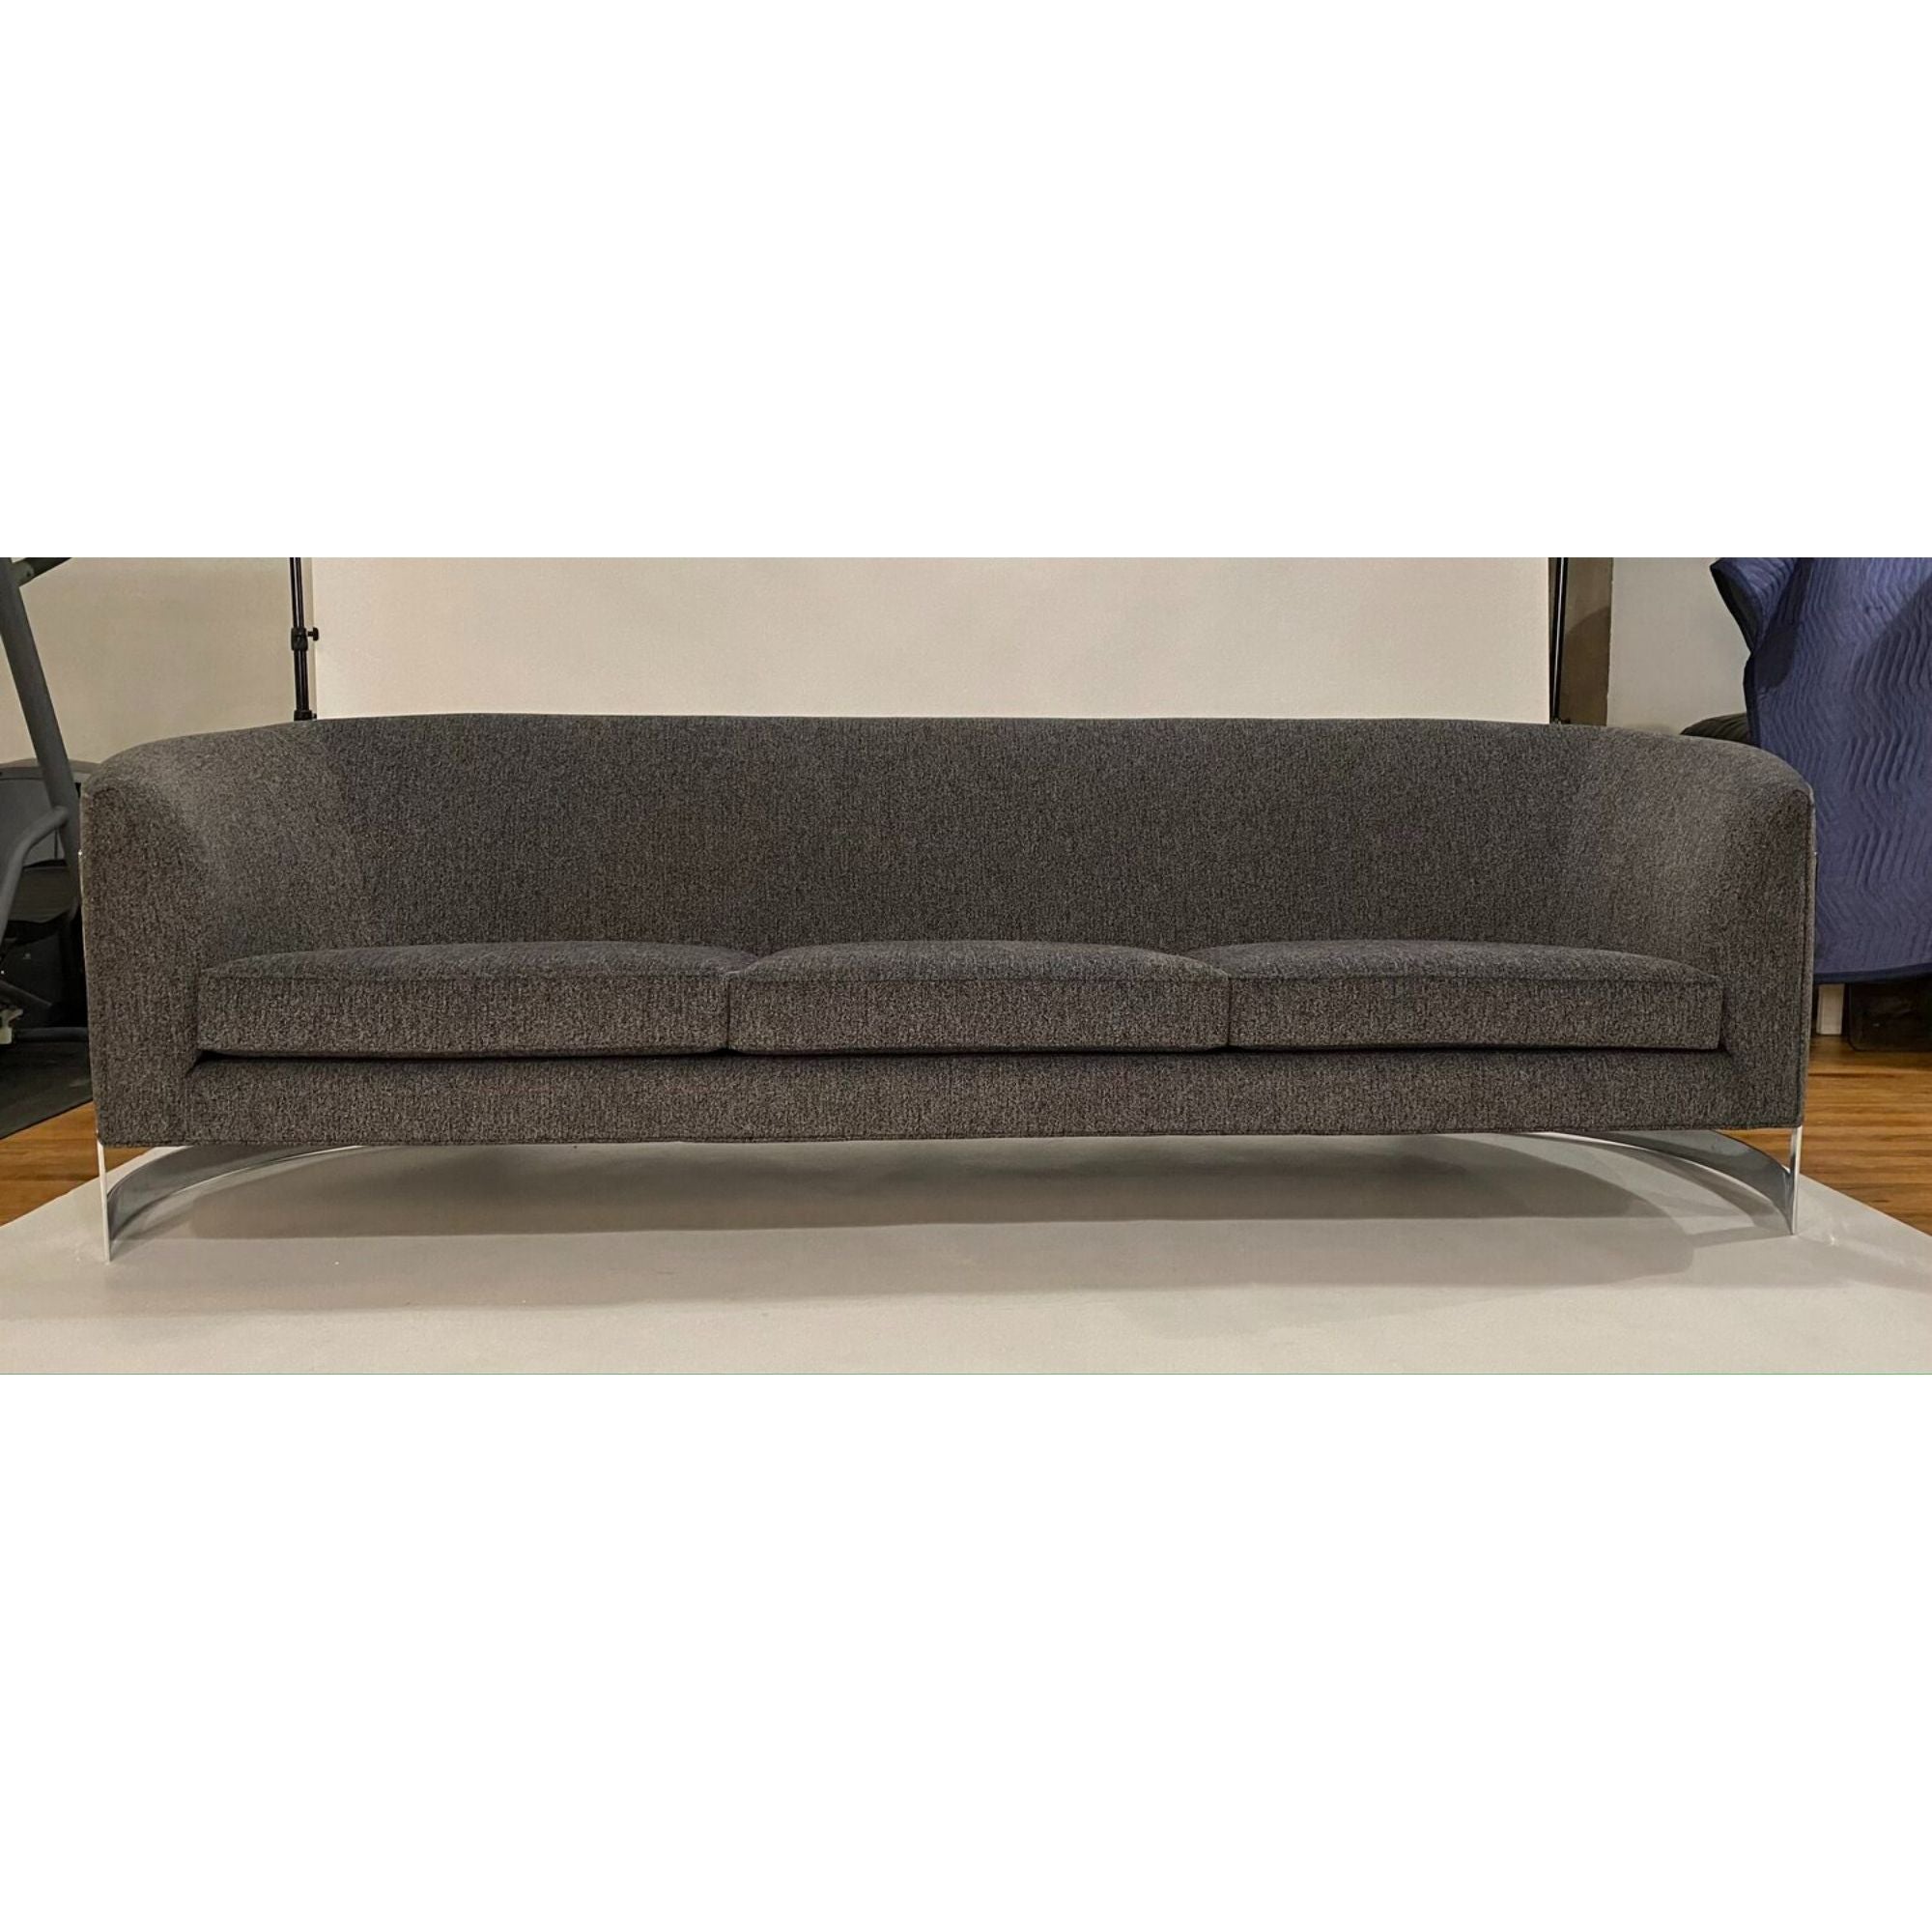 Mid-Century Modernes schwebendes Sofa mit geschwungenen Enden auf einem Chromgestell. 
Dieses Sofa ist ganz neu gepolstert mit einem schwarz-weiß-grauen Tweed-Stoff und neuen Kissen. 
Das Sofa hat die Illusion, in der Luft zu schweben und sieht aus